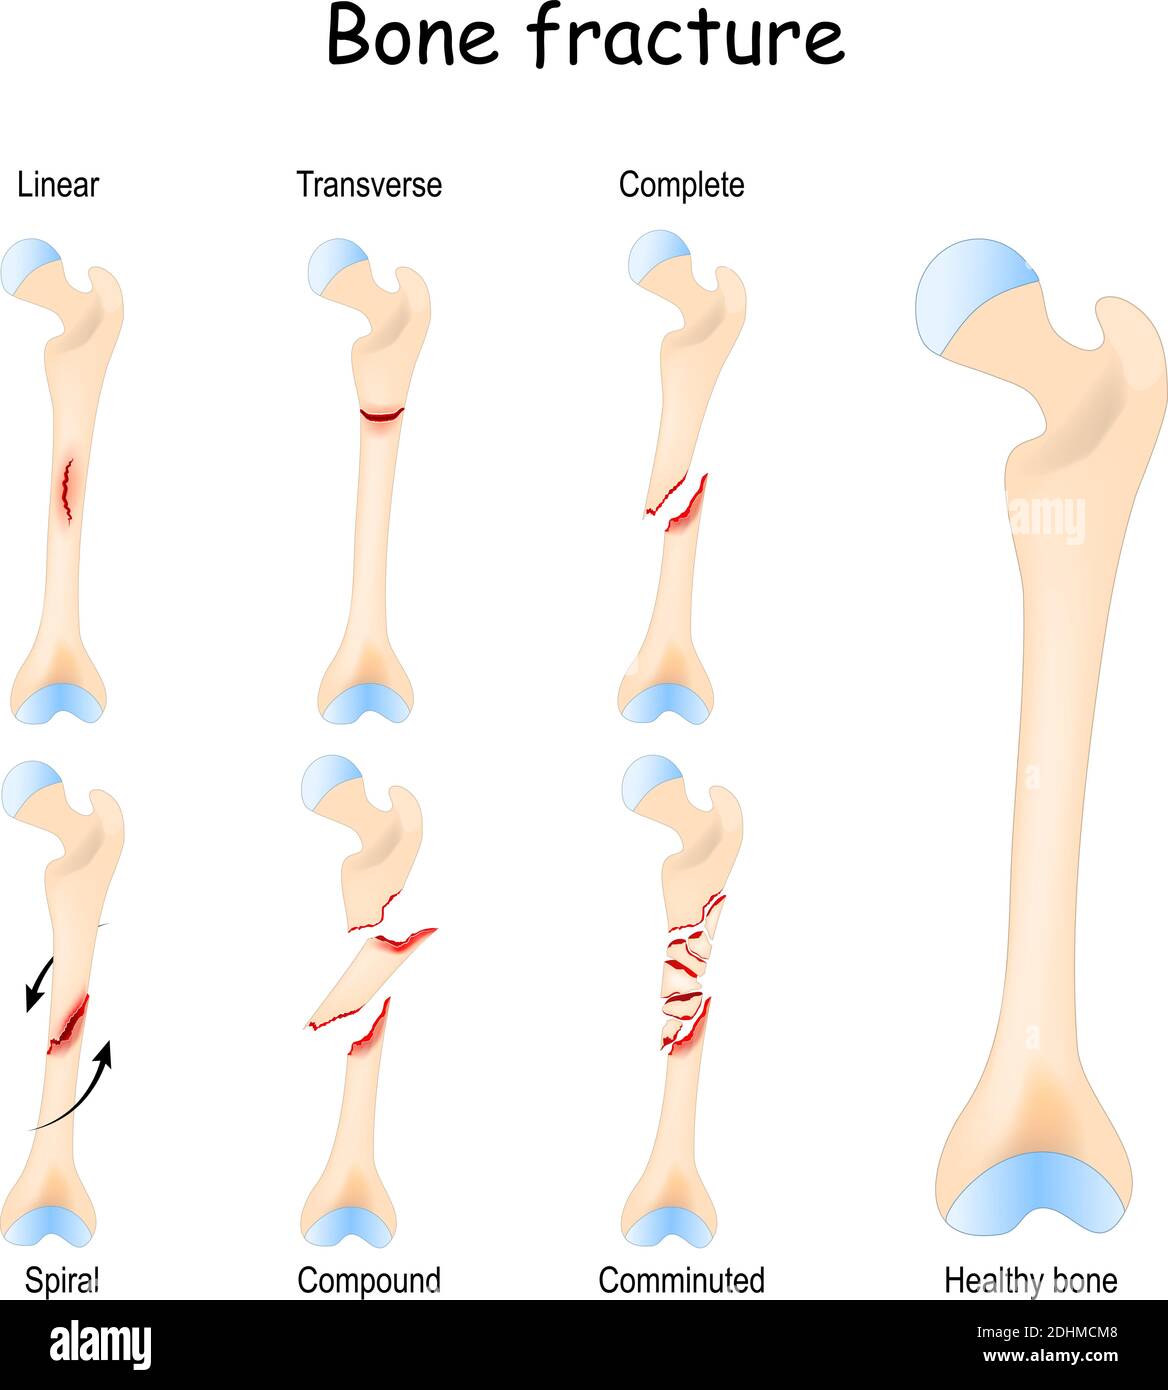 Typische Knochenbrüche: Linear, transversal, komplett, Compound, Spiral und Komputur. Gesunde Oberschenkel- und Beinfraktur in verschiedenen Stadien. Stock Vektor